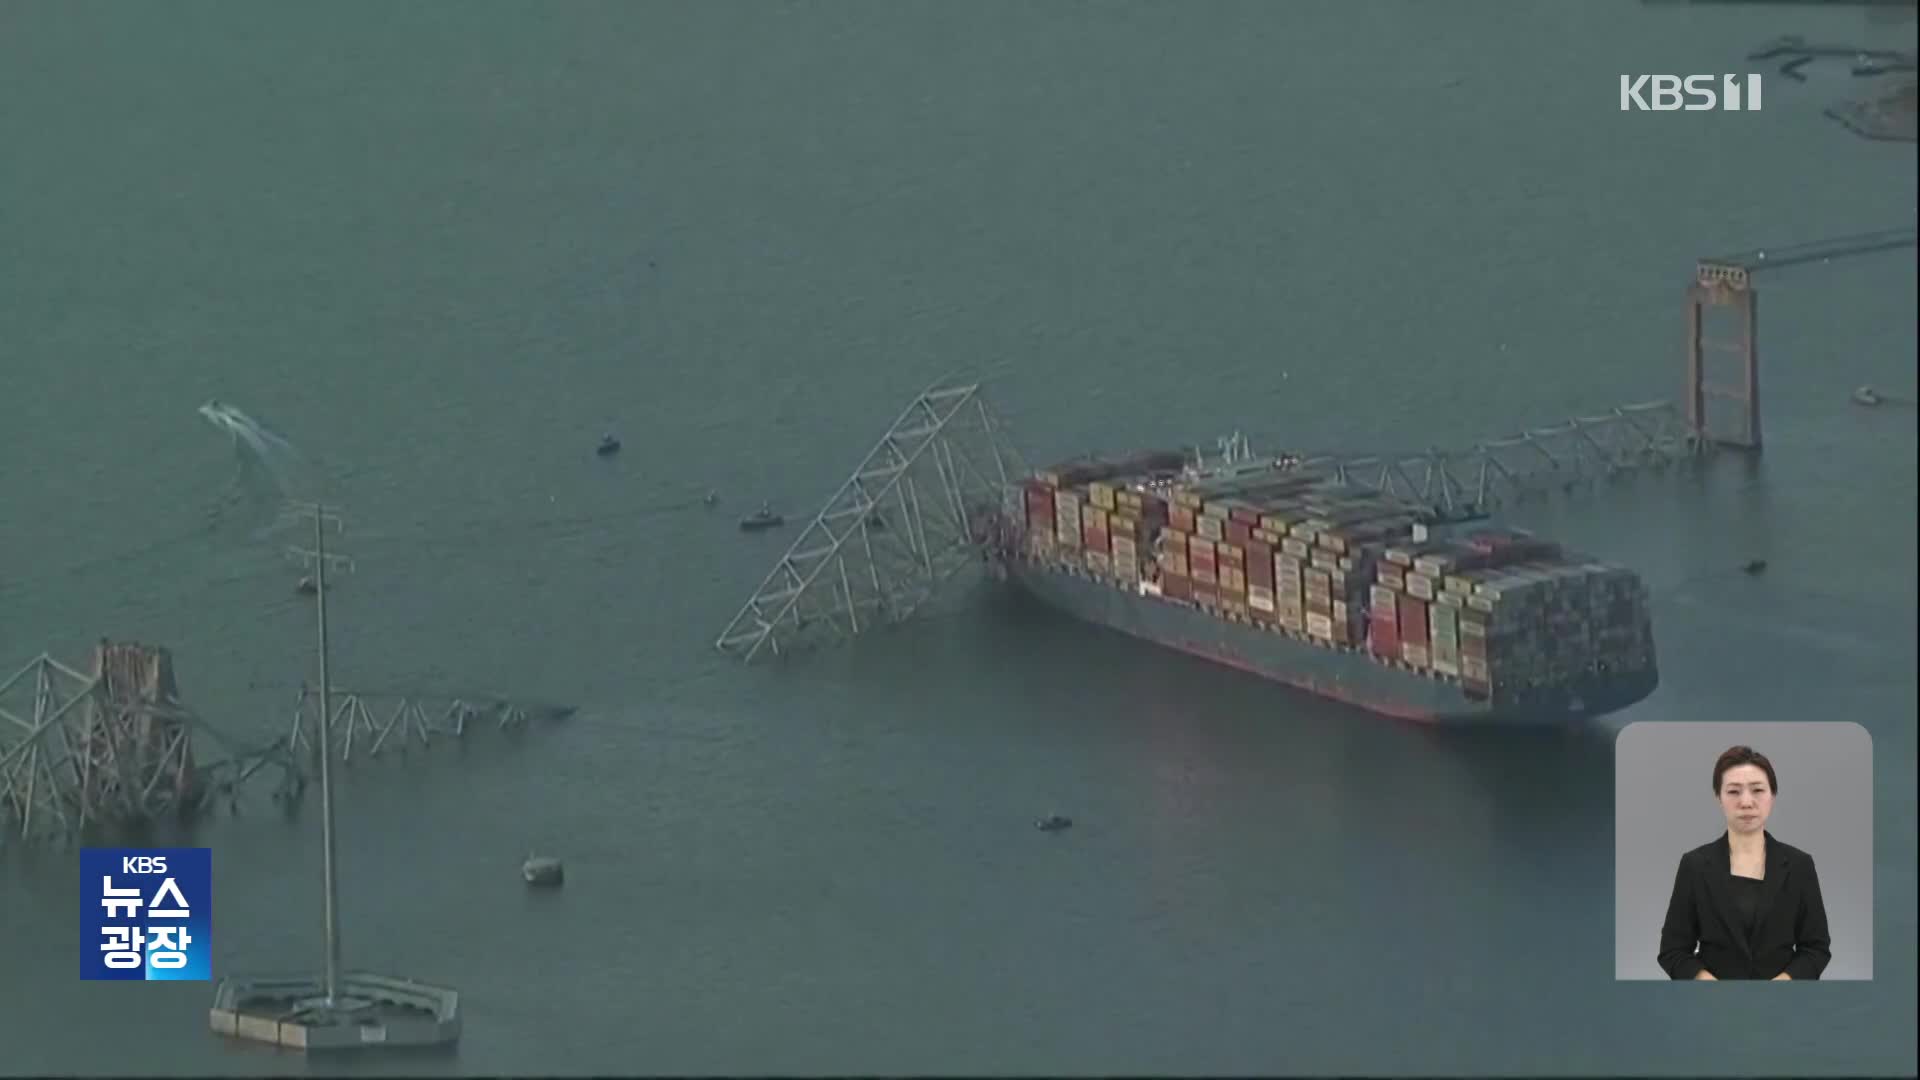 미 볼티모어 항 다리 붕괴, 1명 사망·5명 실종…“끔찍한 사고”